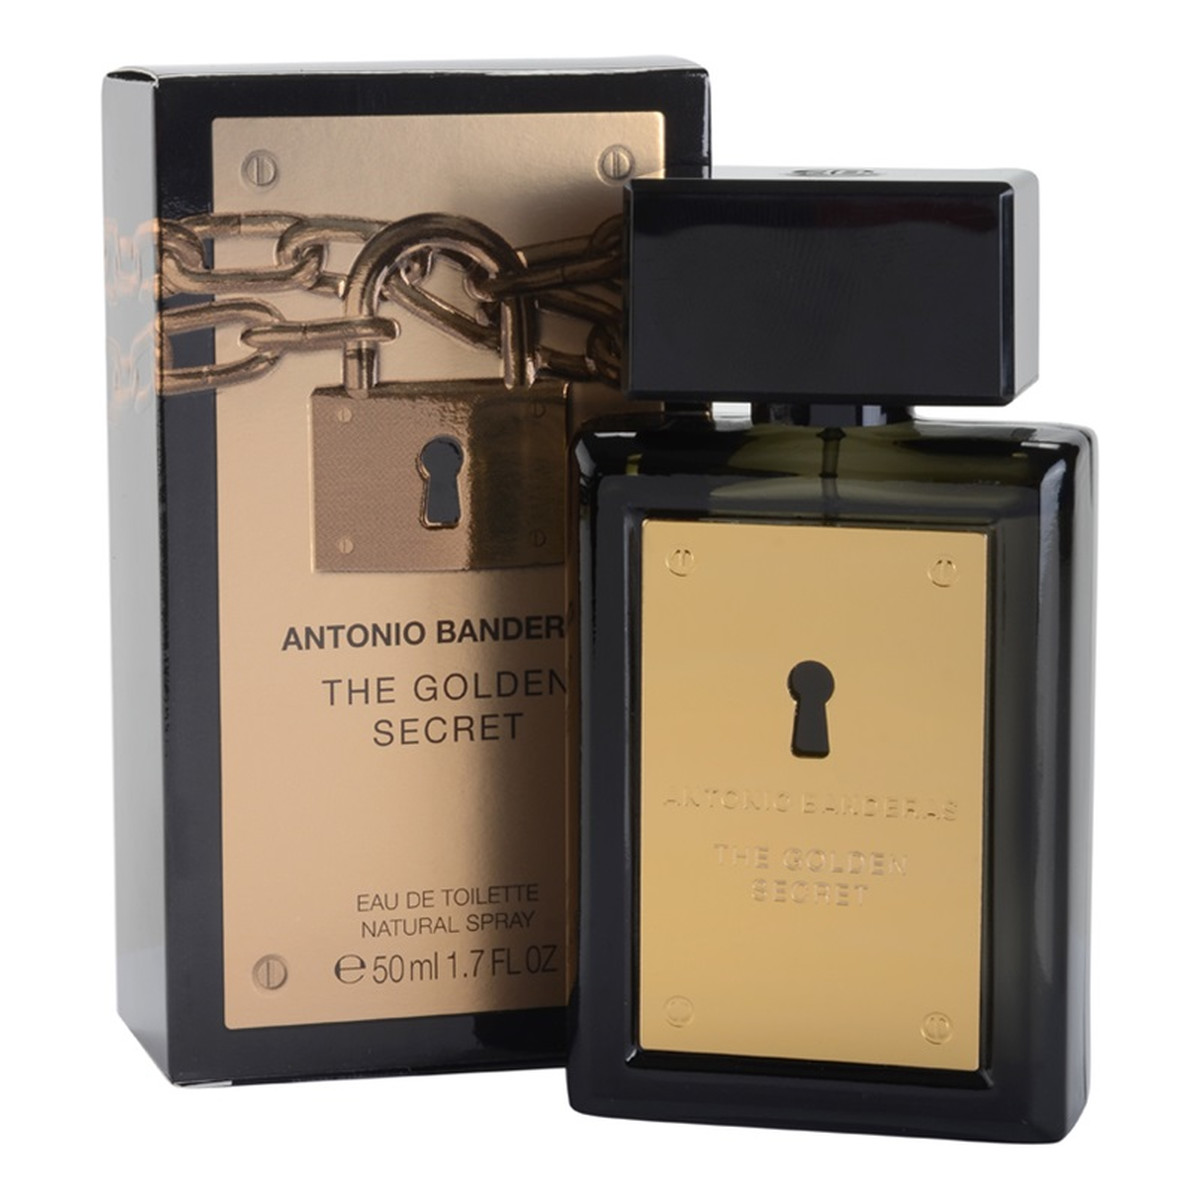 Antonio Banderas The Golden Secret woda toaletowa 50ml